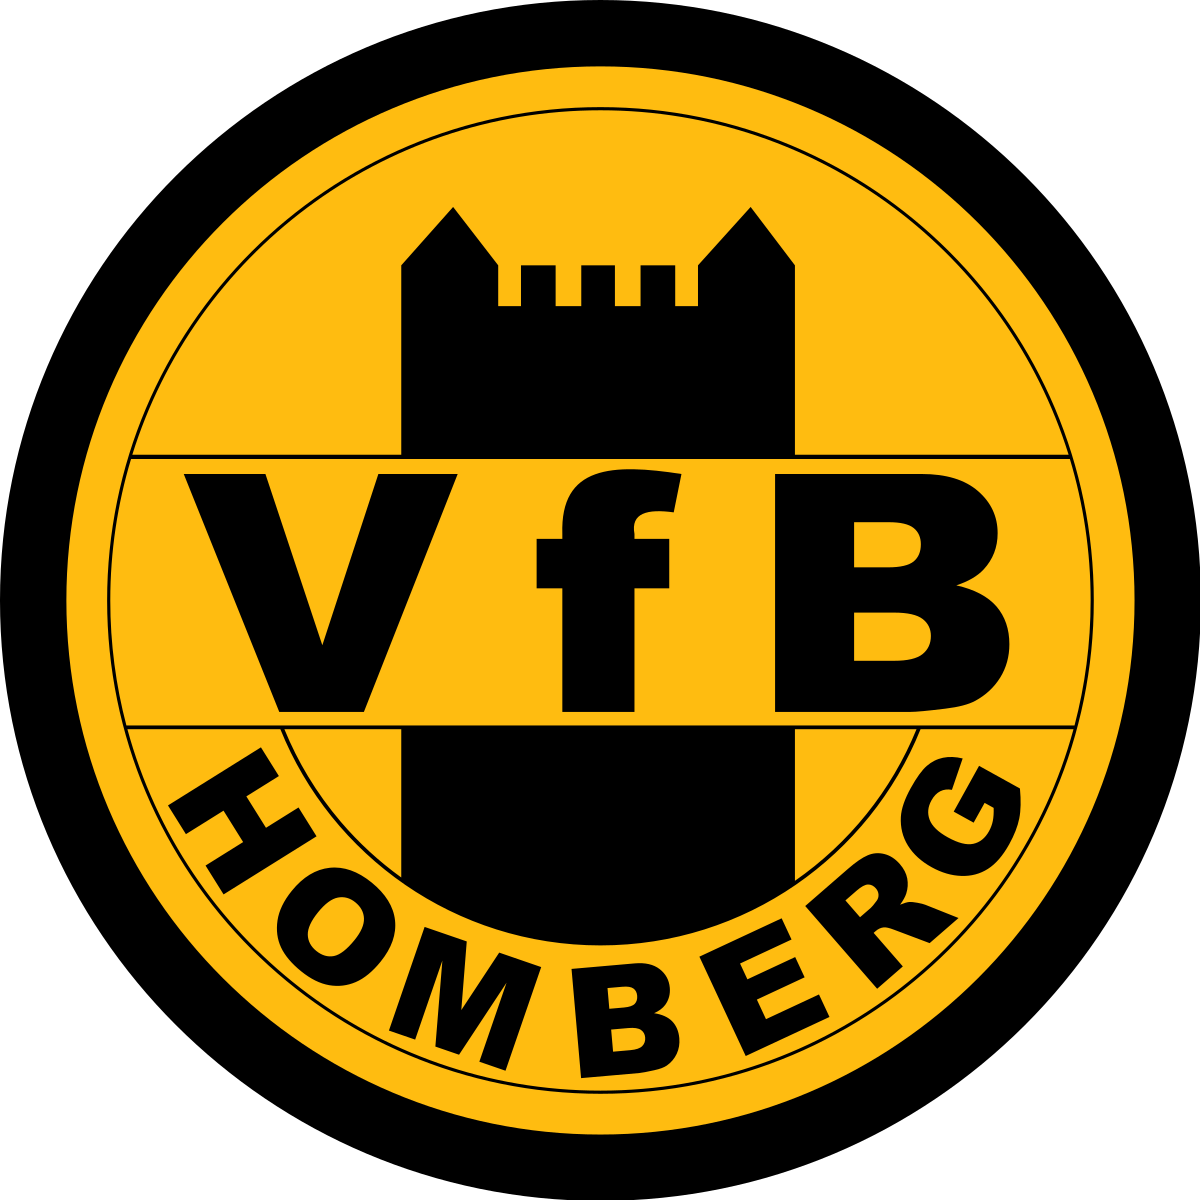 VfB Homberg e.V.